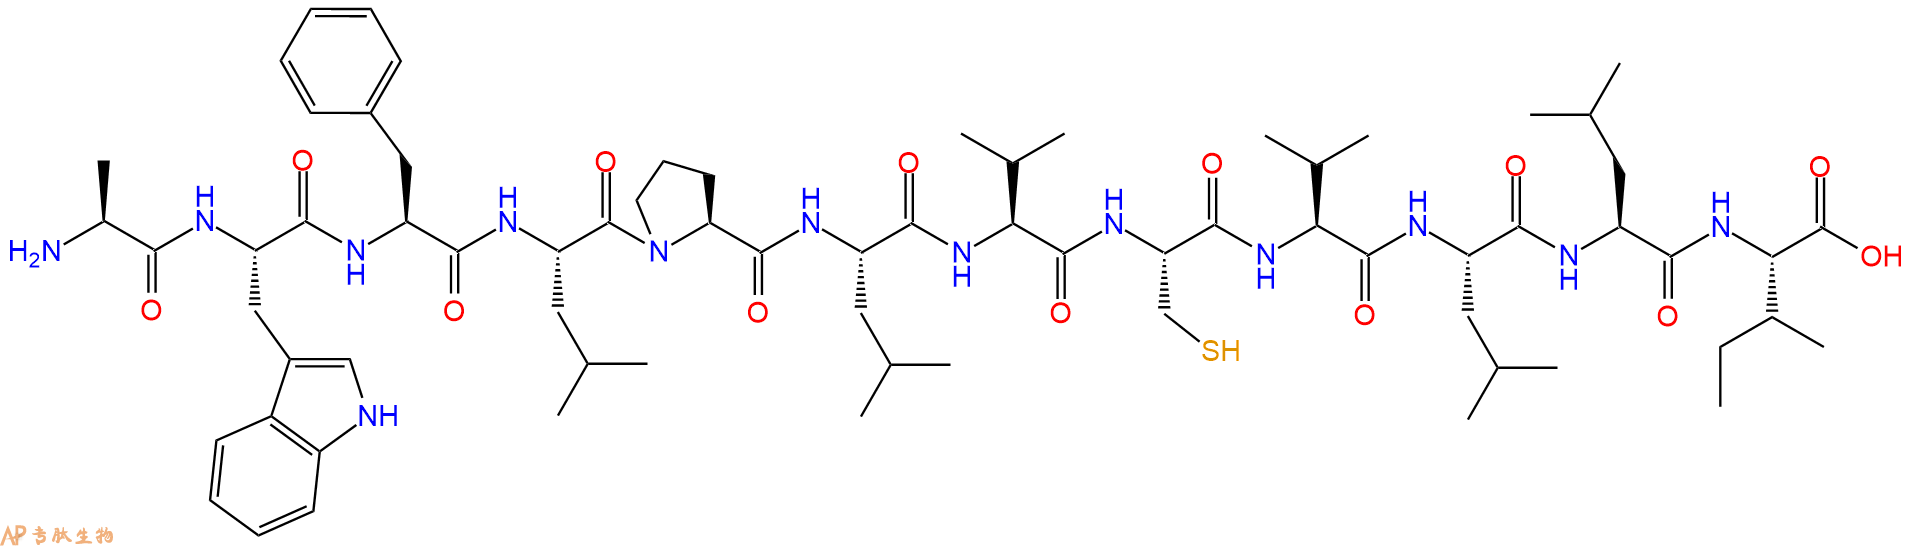 专肽生物产品H2N-Ala-Trp-Phe-Leu-Pro-Leu-Val-Cys-Val-Leu-Leu-Il